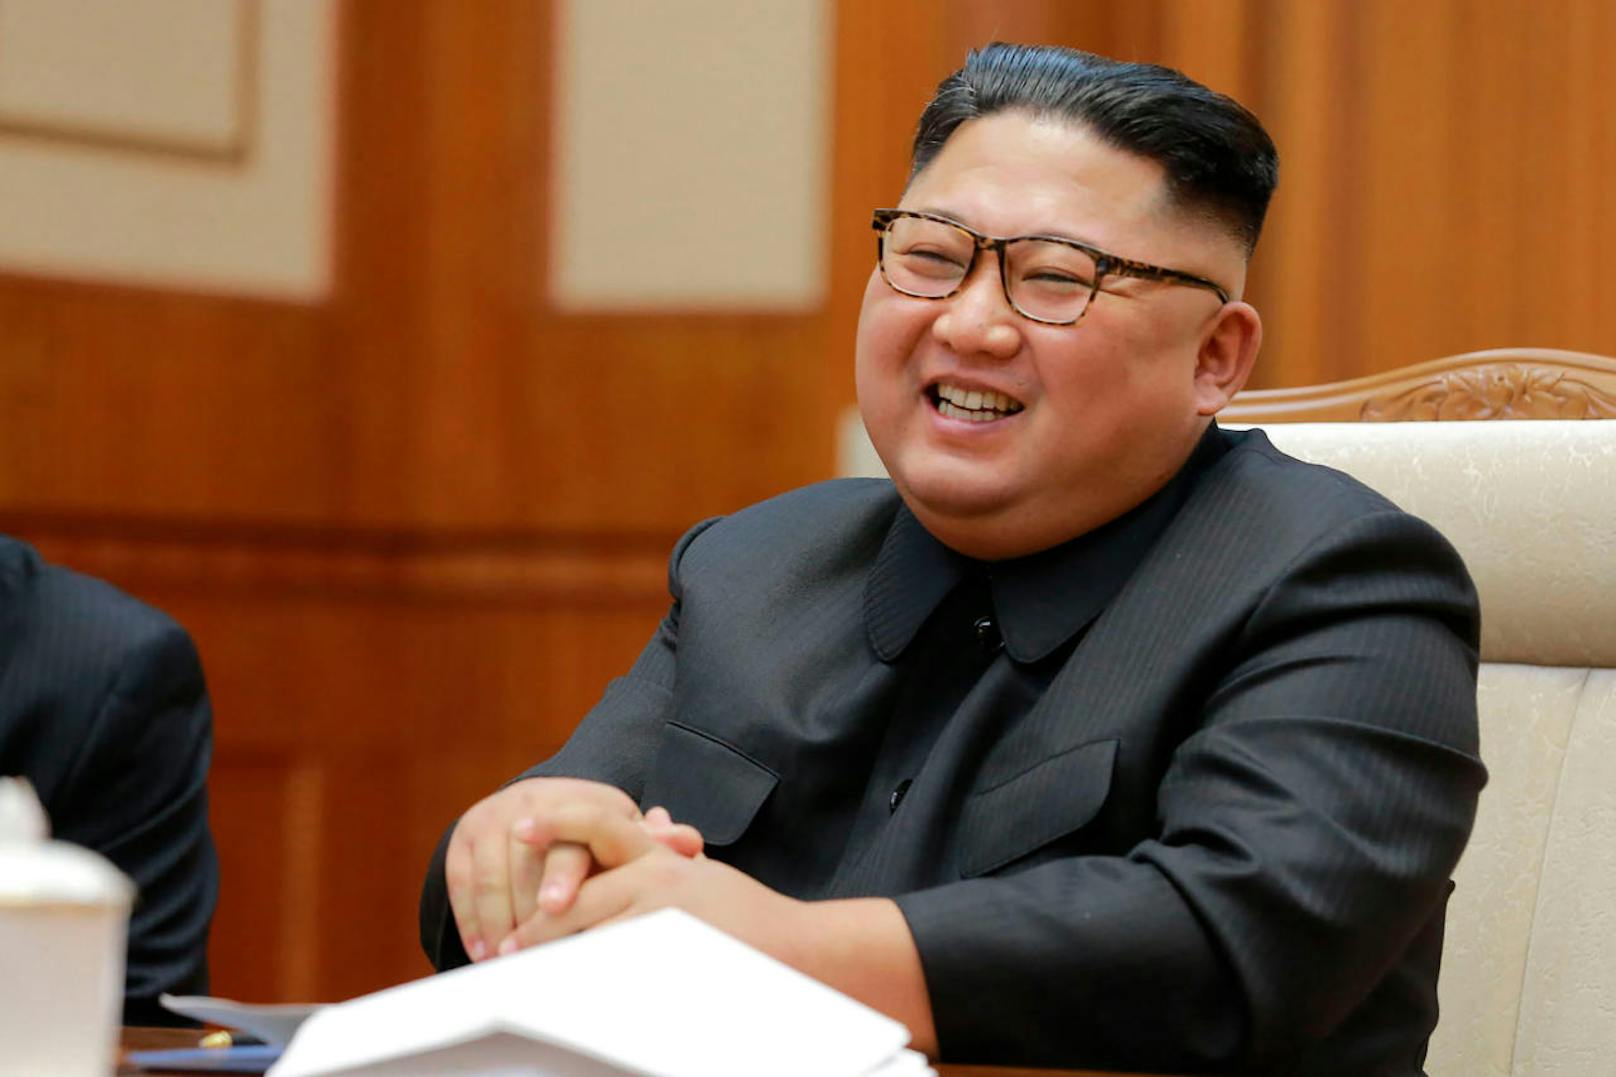 Das Image des nordkoreanischen Diktators begann sich in diesem Jahr zu wandeln.